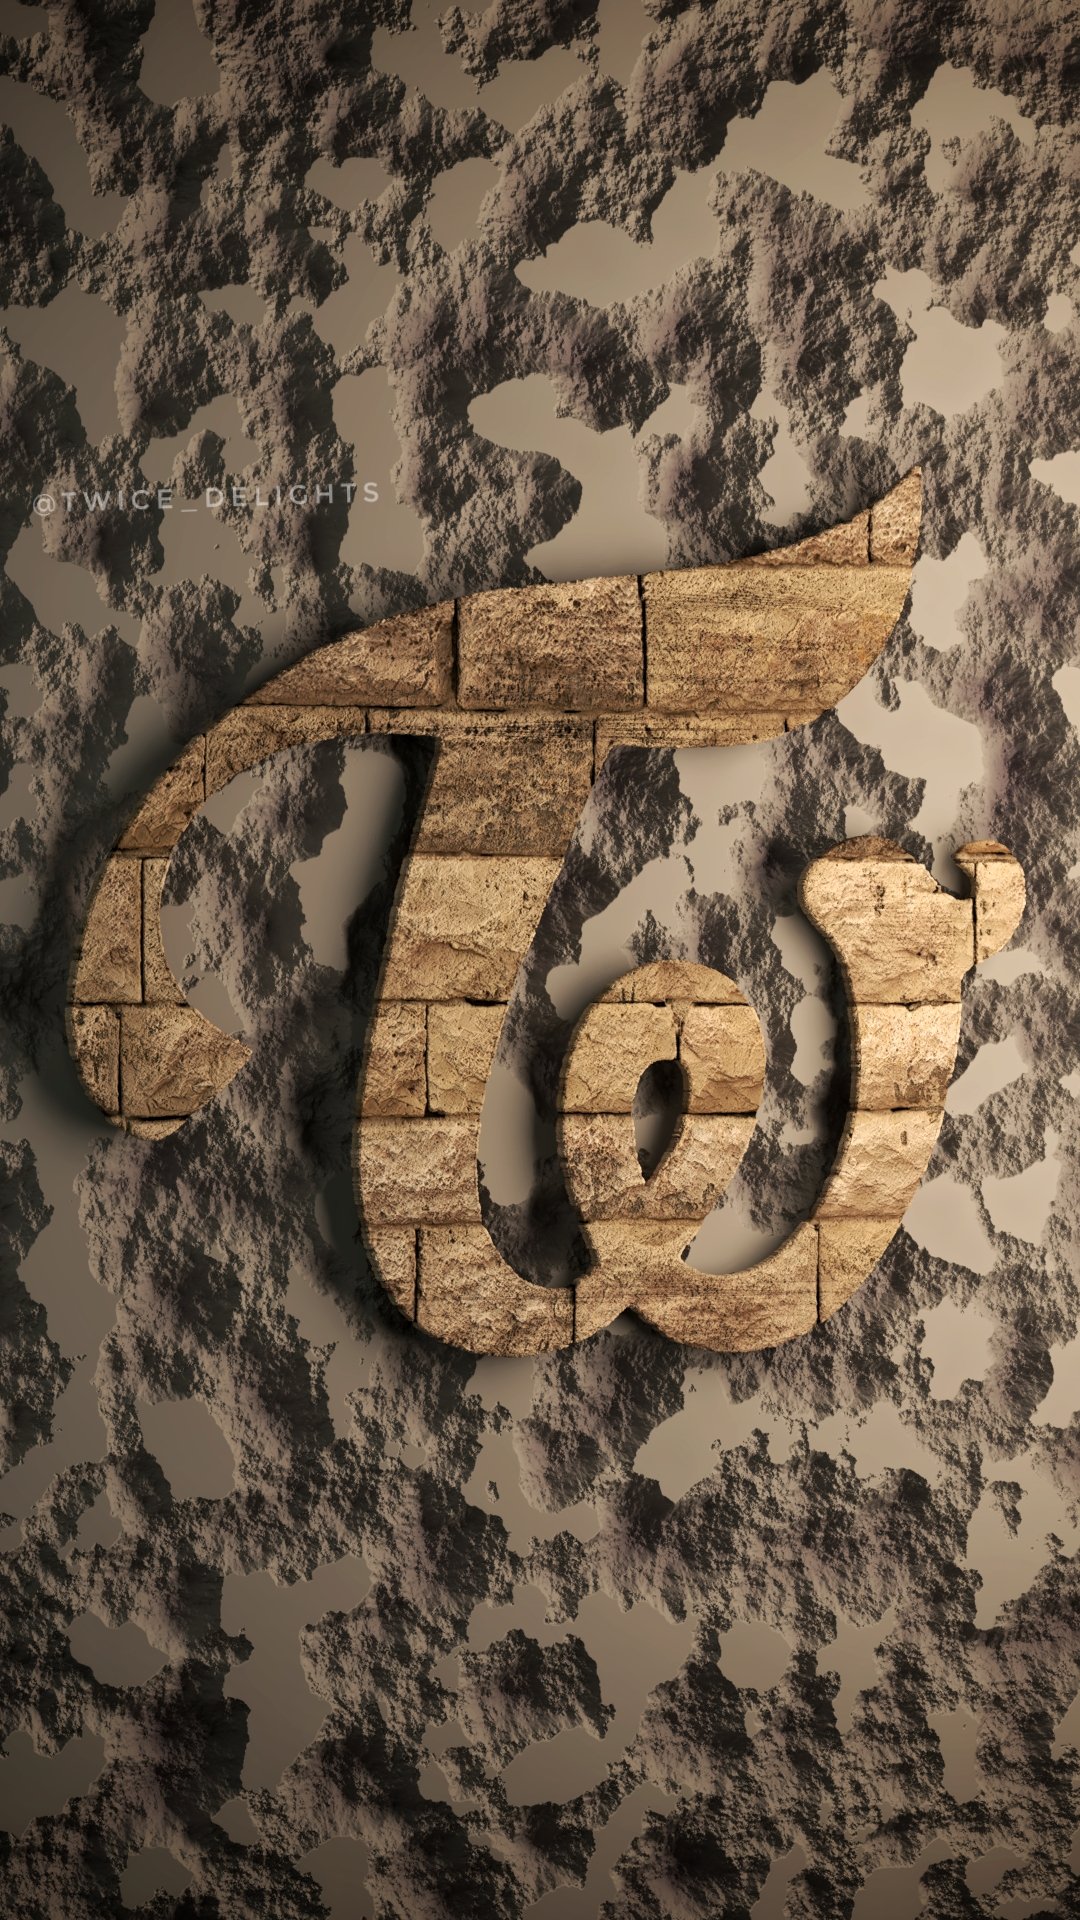 Twice_delights on X: #TWICE #logo Rock #wallpaper #b3d   / X